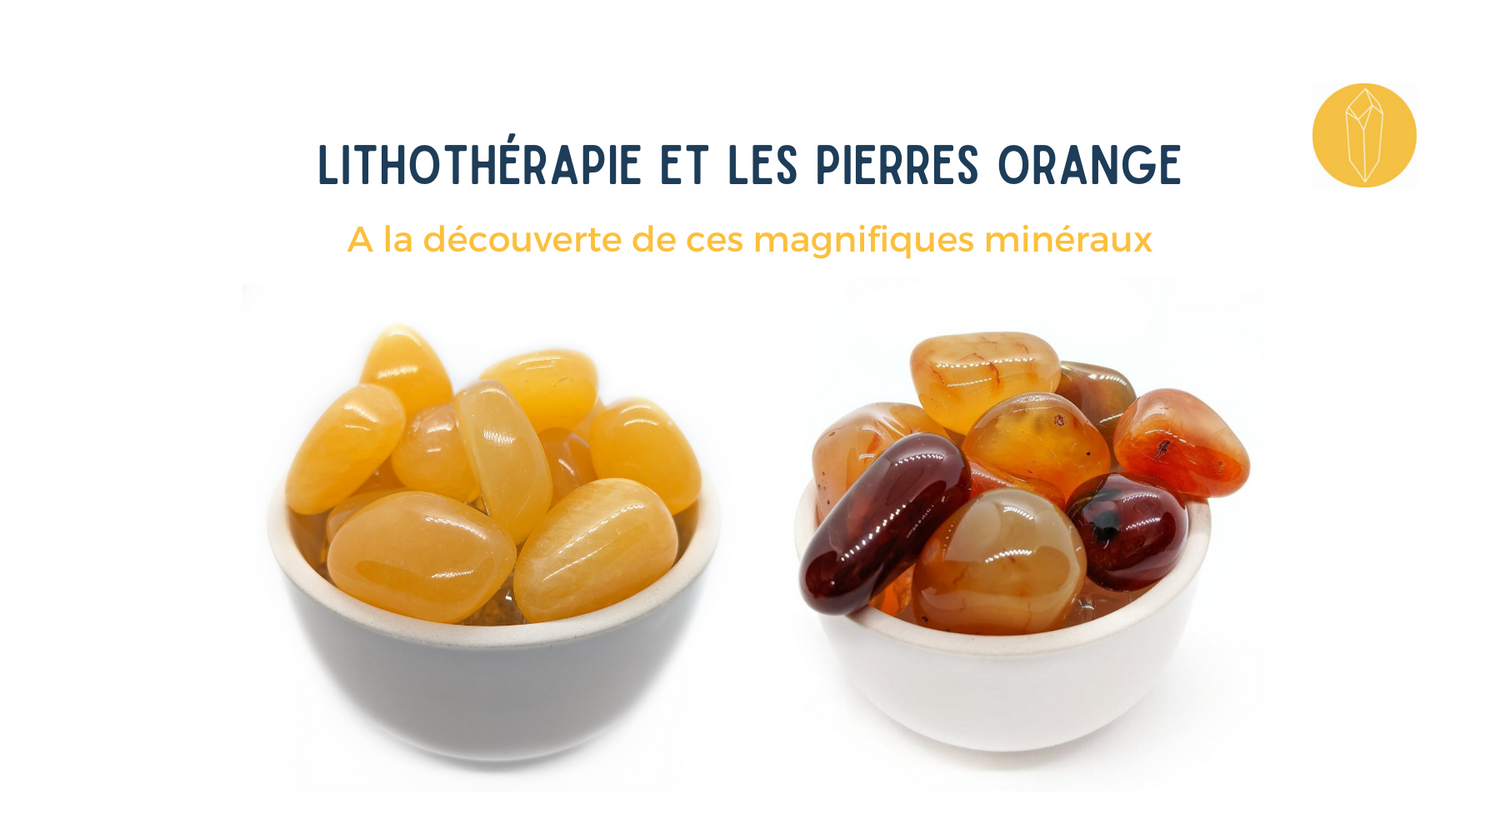 Pierres orange et minéraux  Bienfaits et vertus de lithothérapie